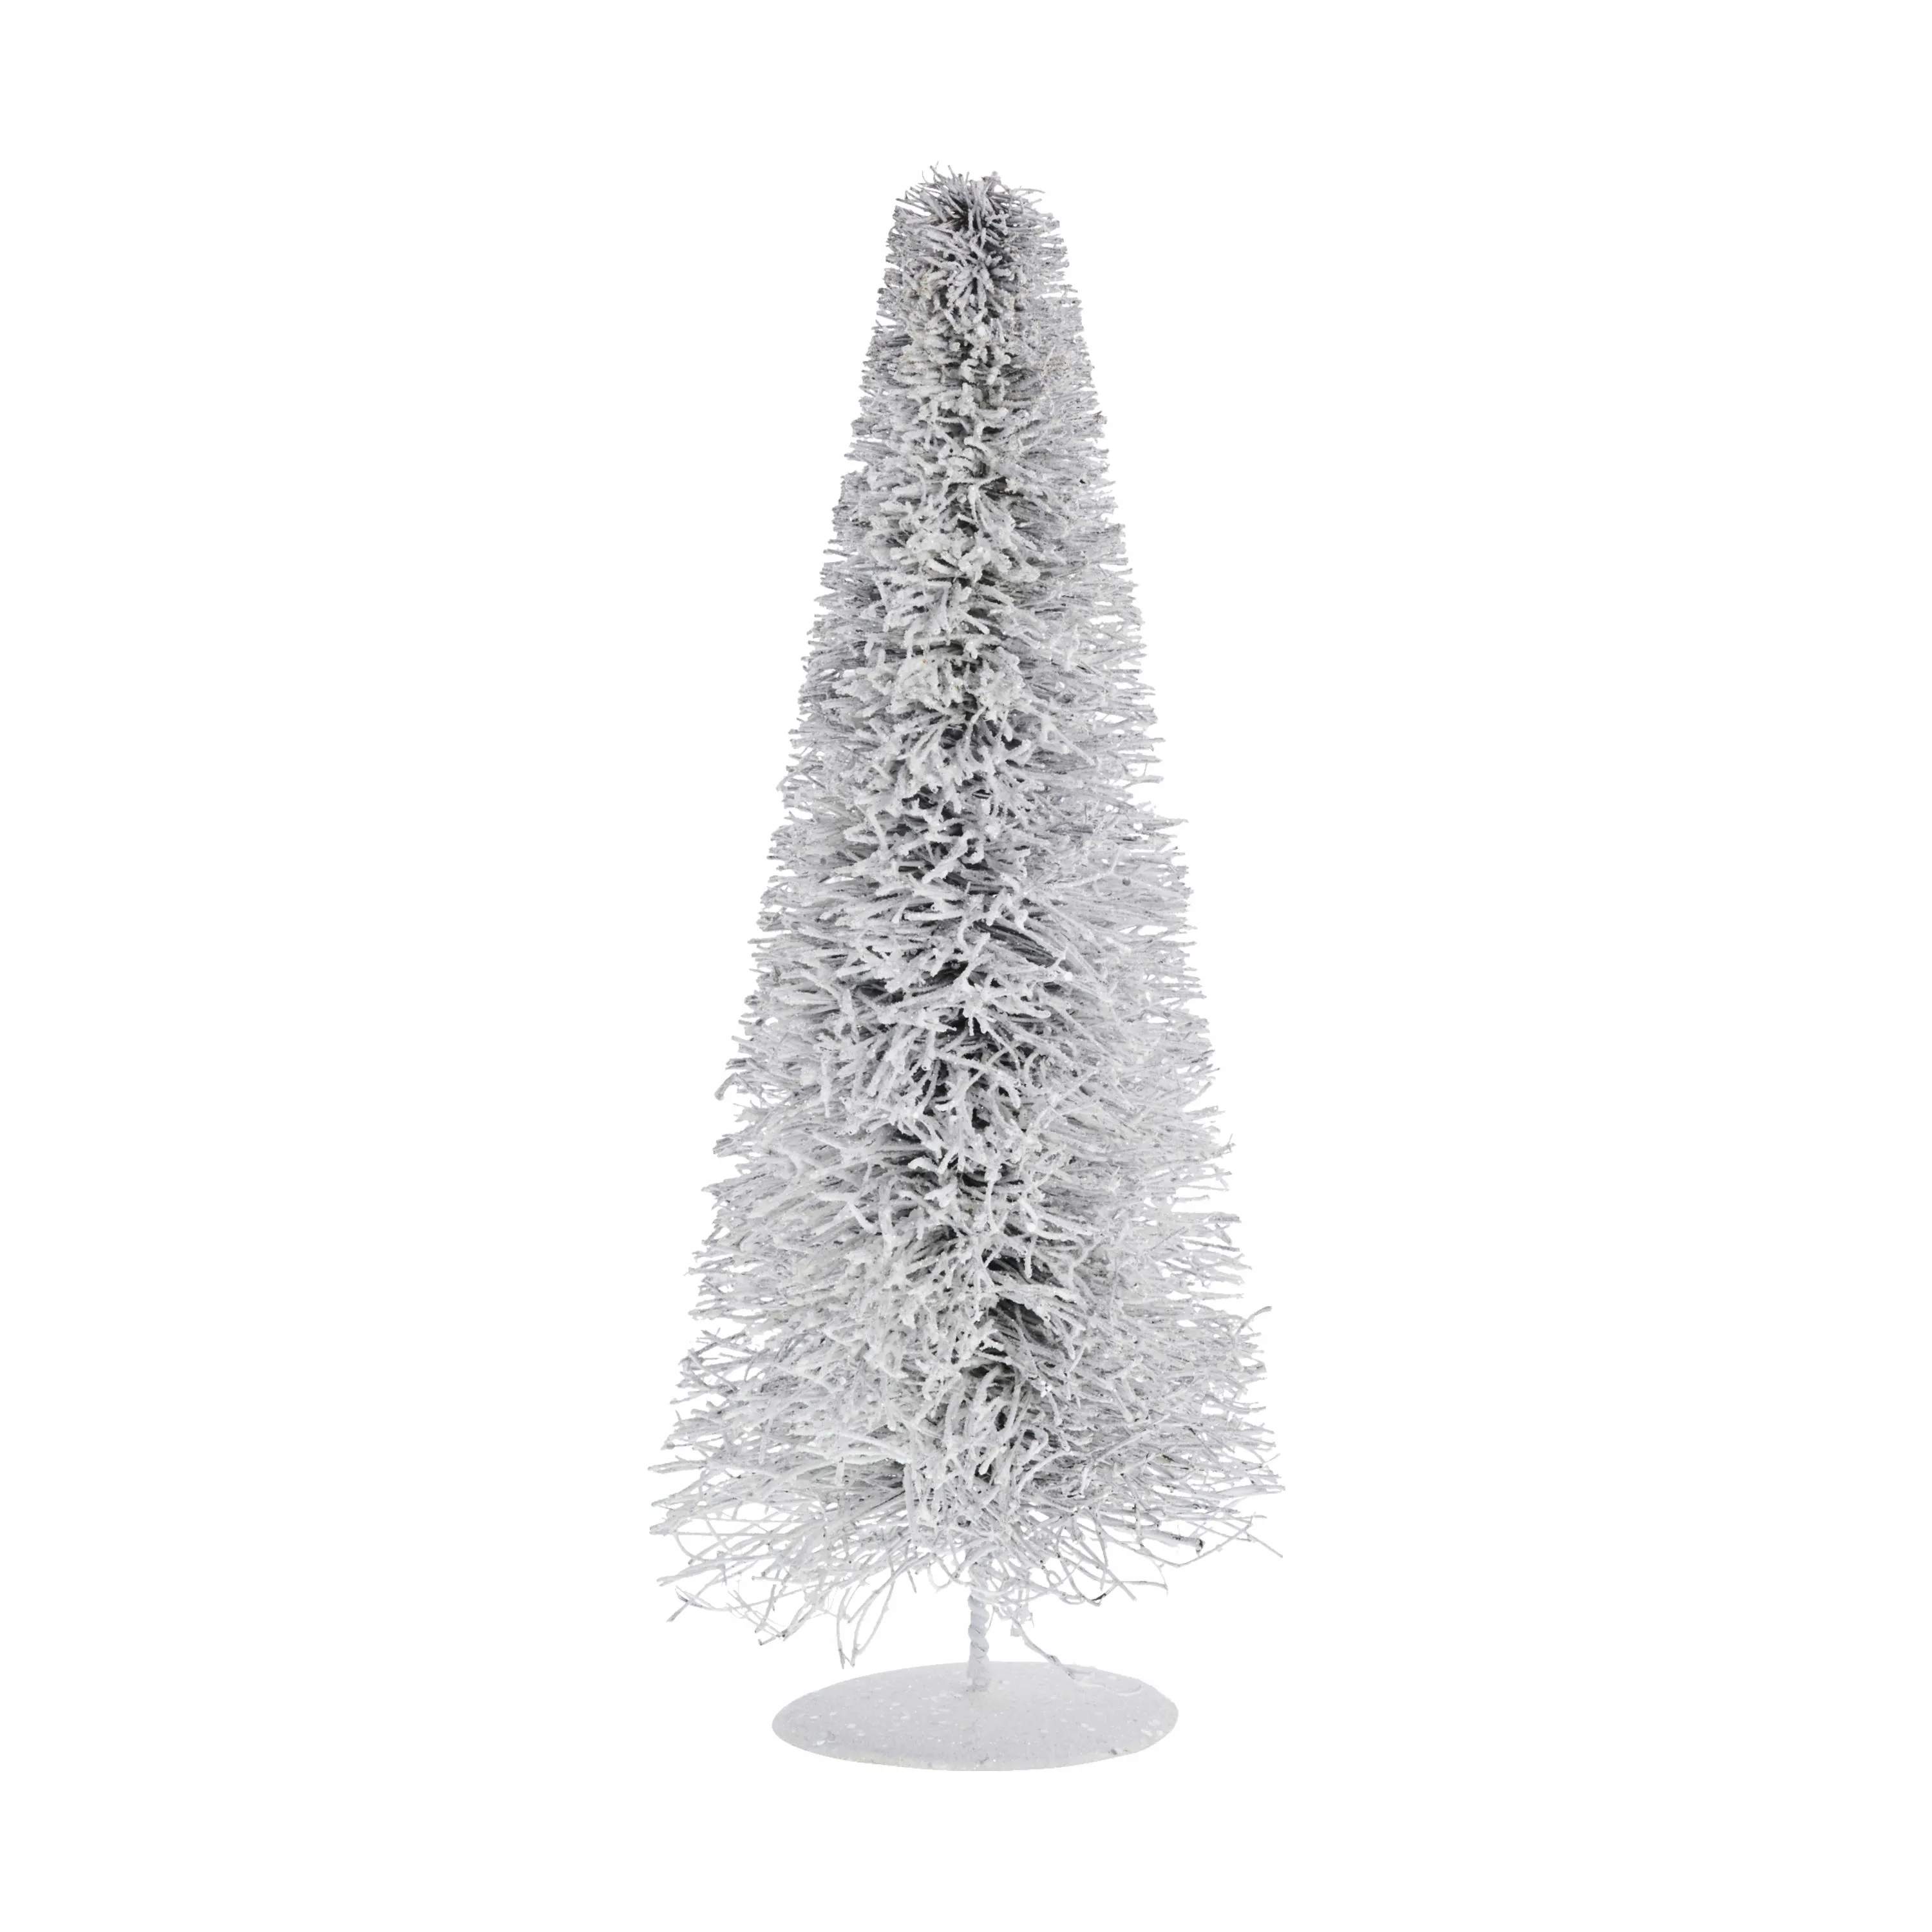 Alivia dekoration - Juletræ